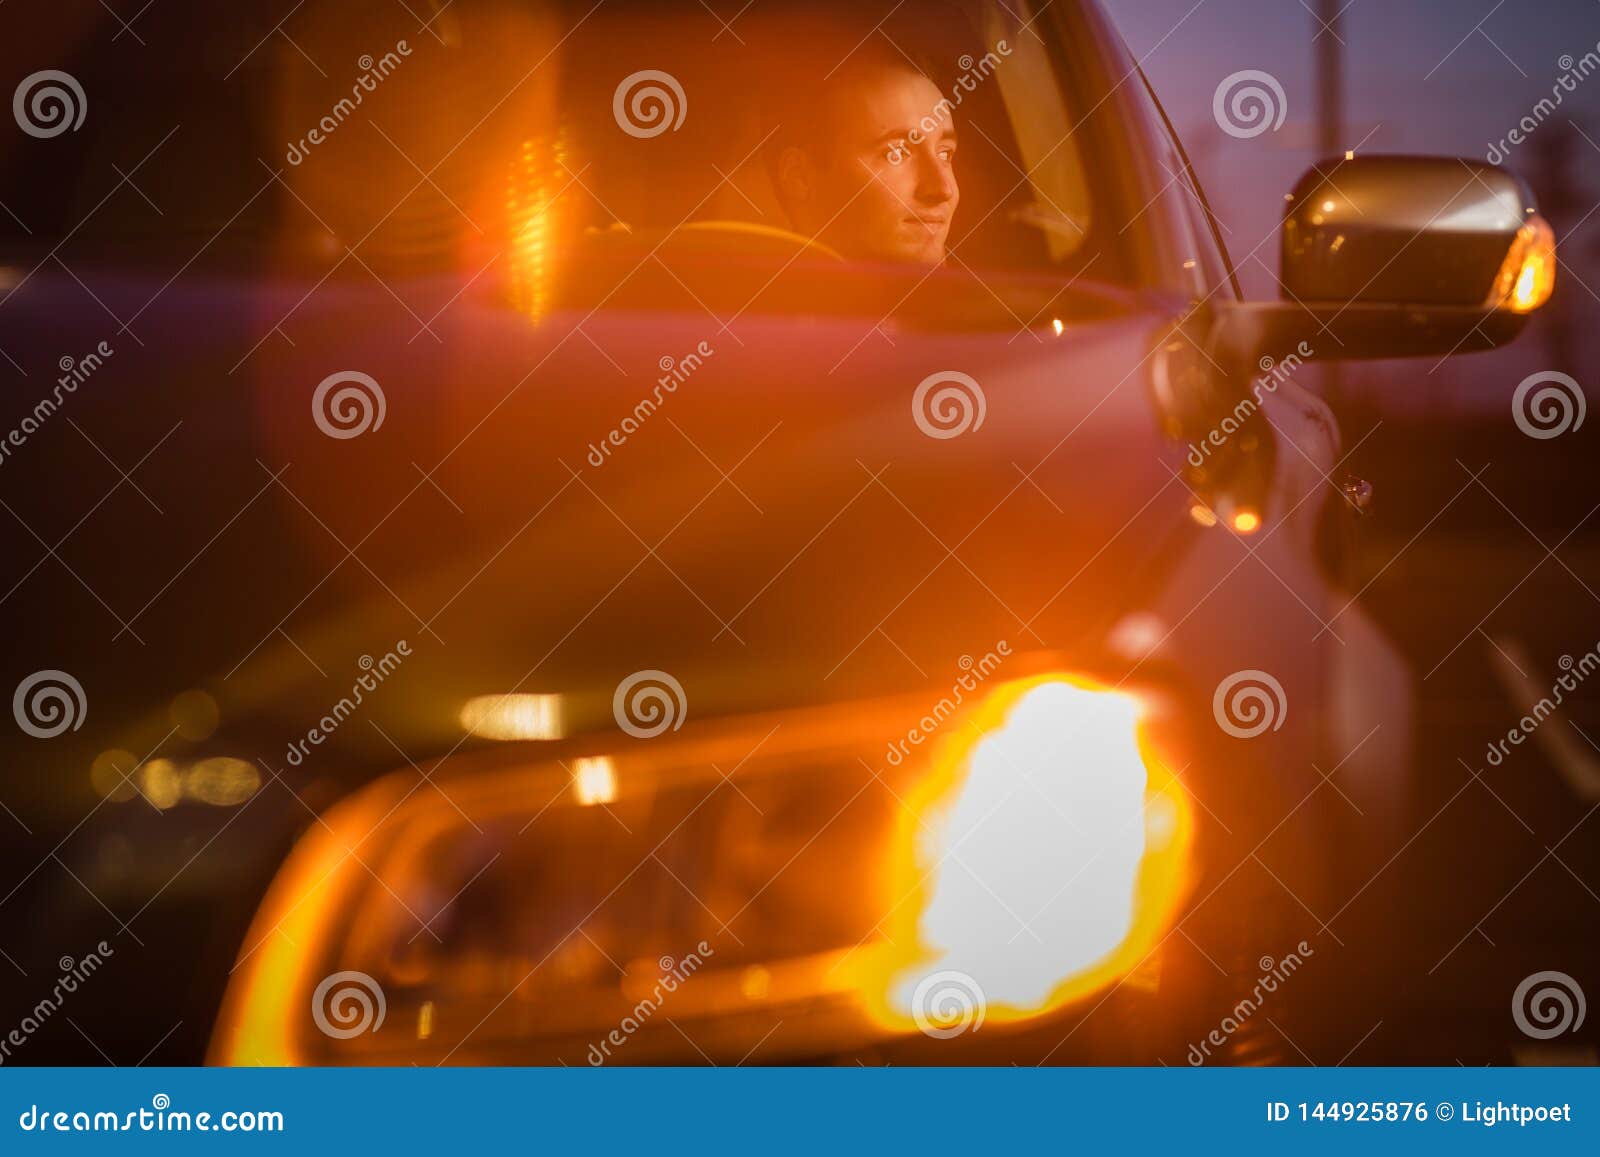 Hombre joven hermoso que conduce su coche en la noche. Hombre joven hermoso que conduce su coche en la imagen entonada color de la noche